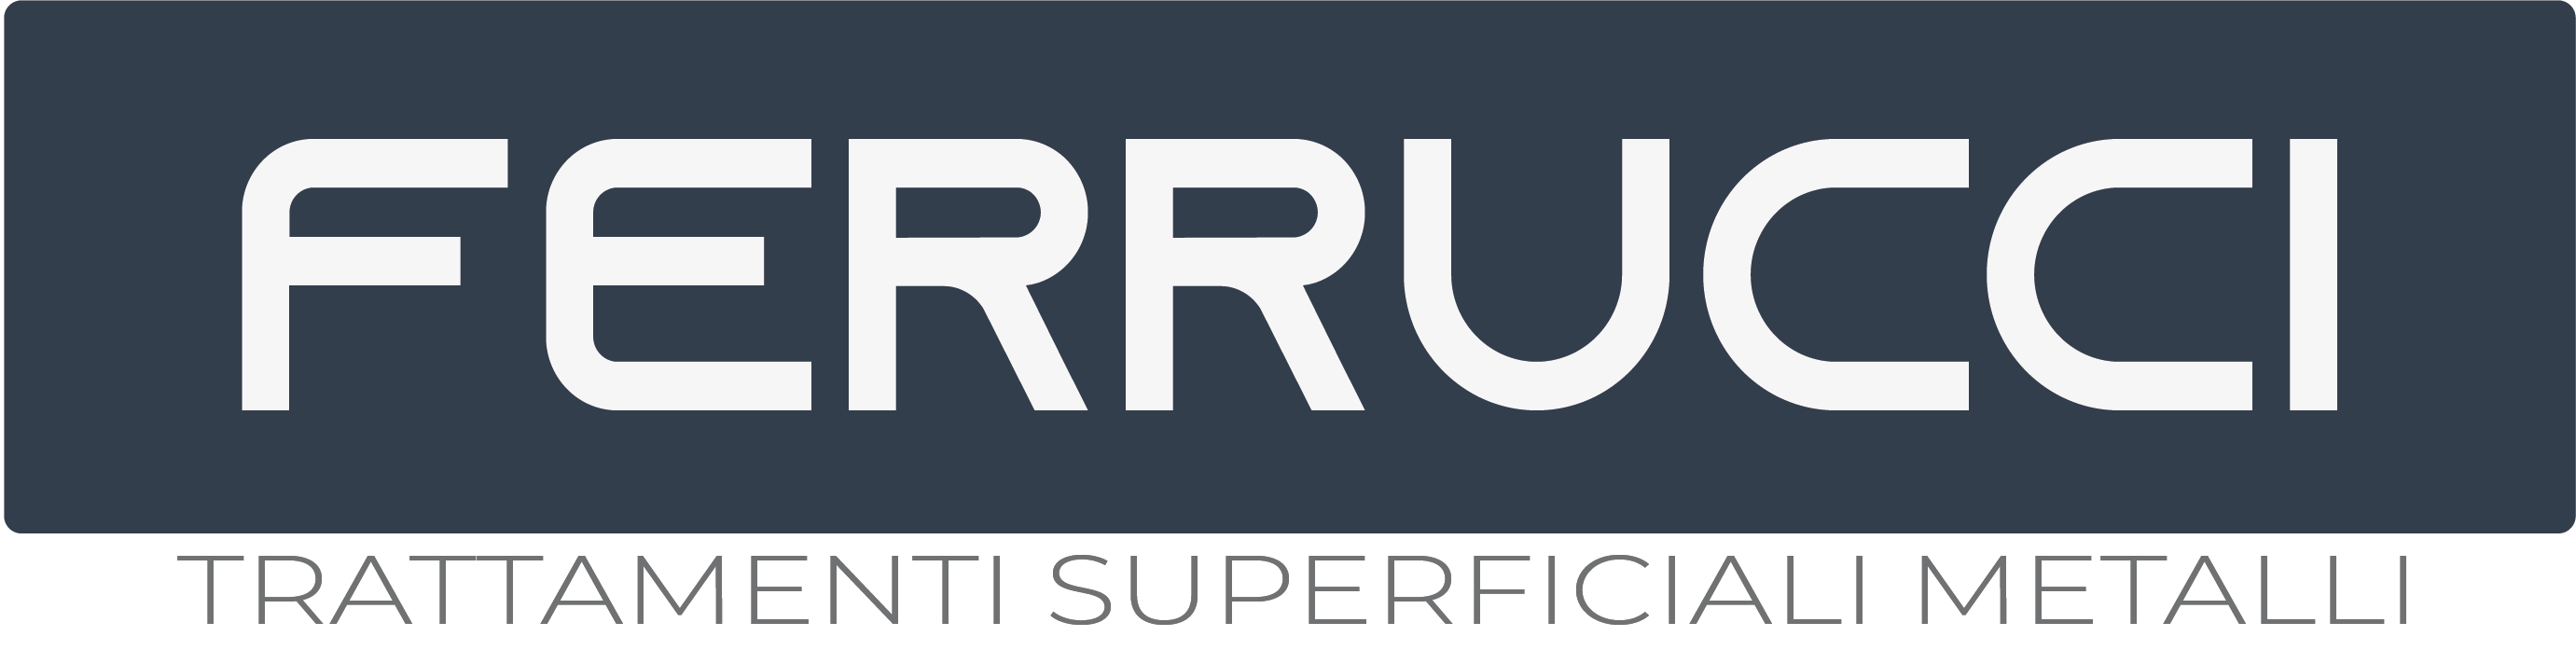 Ferrucci | Trattamenti Superficiali Metalli